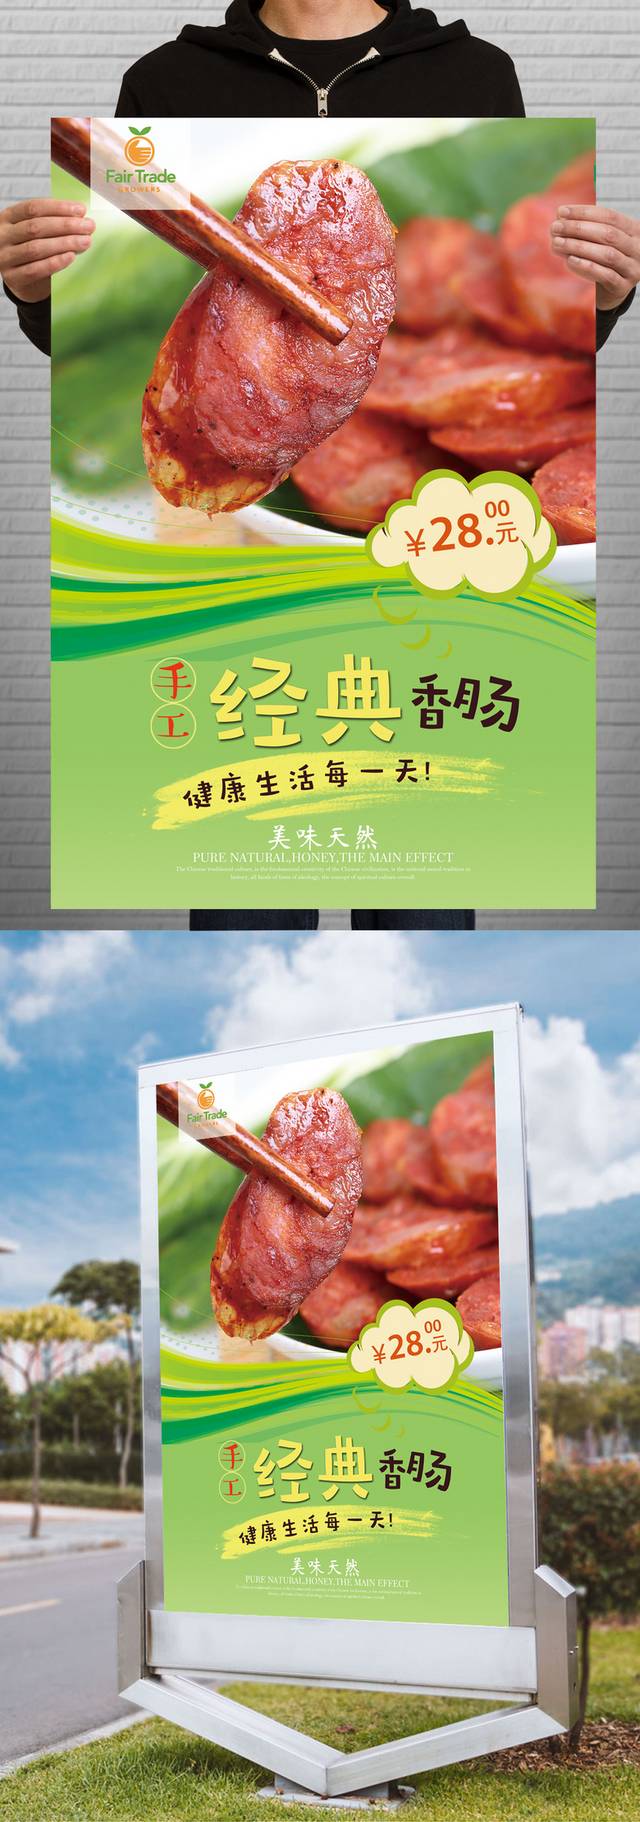 高清香肠宣传海报设计